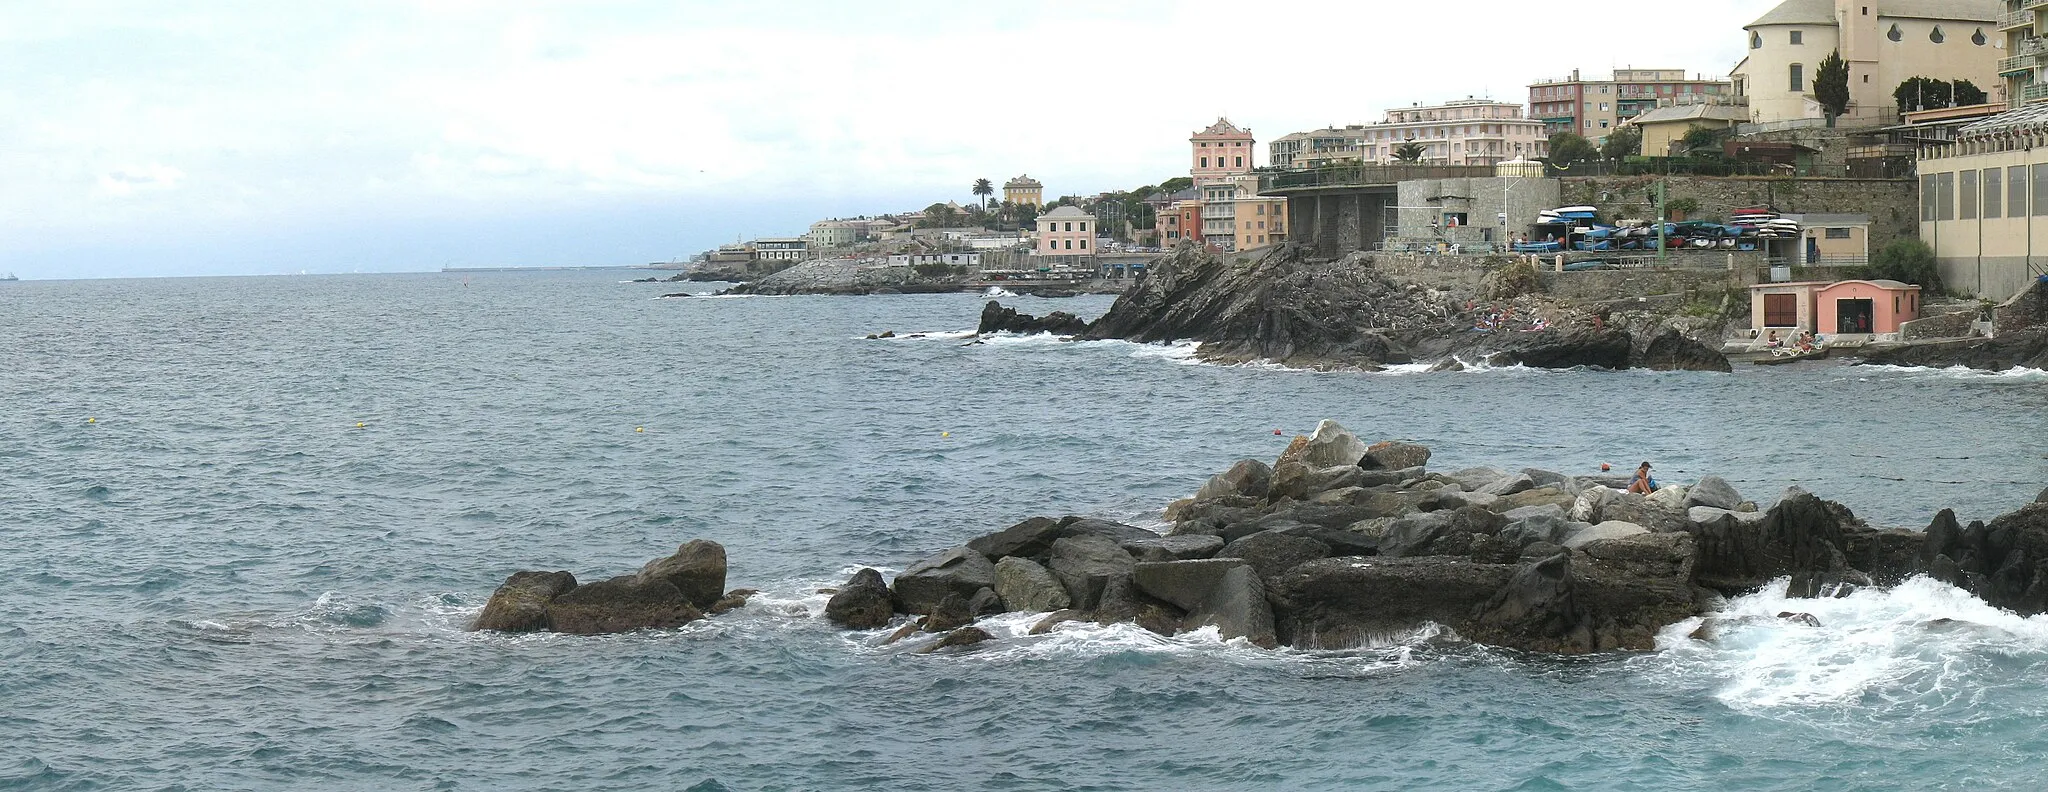 Photo showing: Genova, quartiere di Quinto al mare

Spiaggia e scogliera dello Scalo